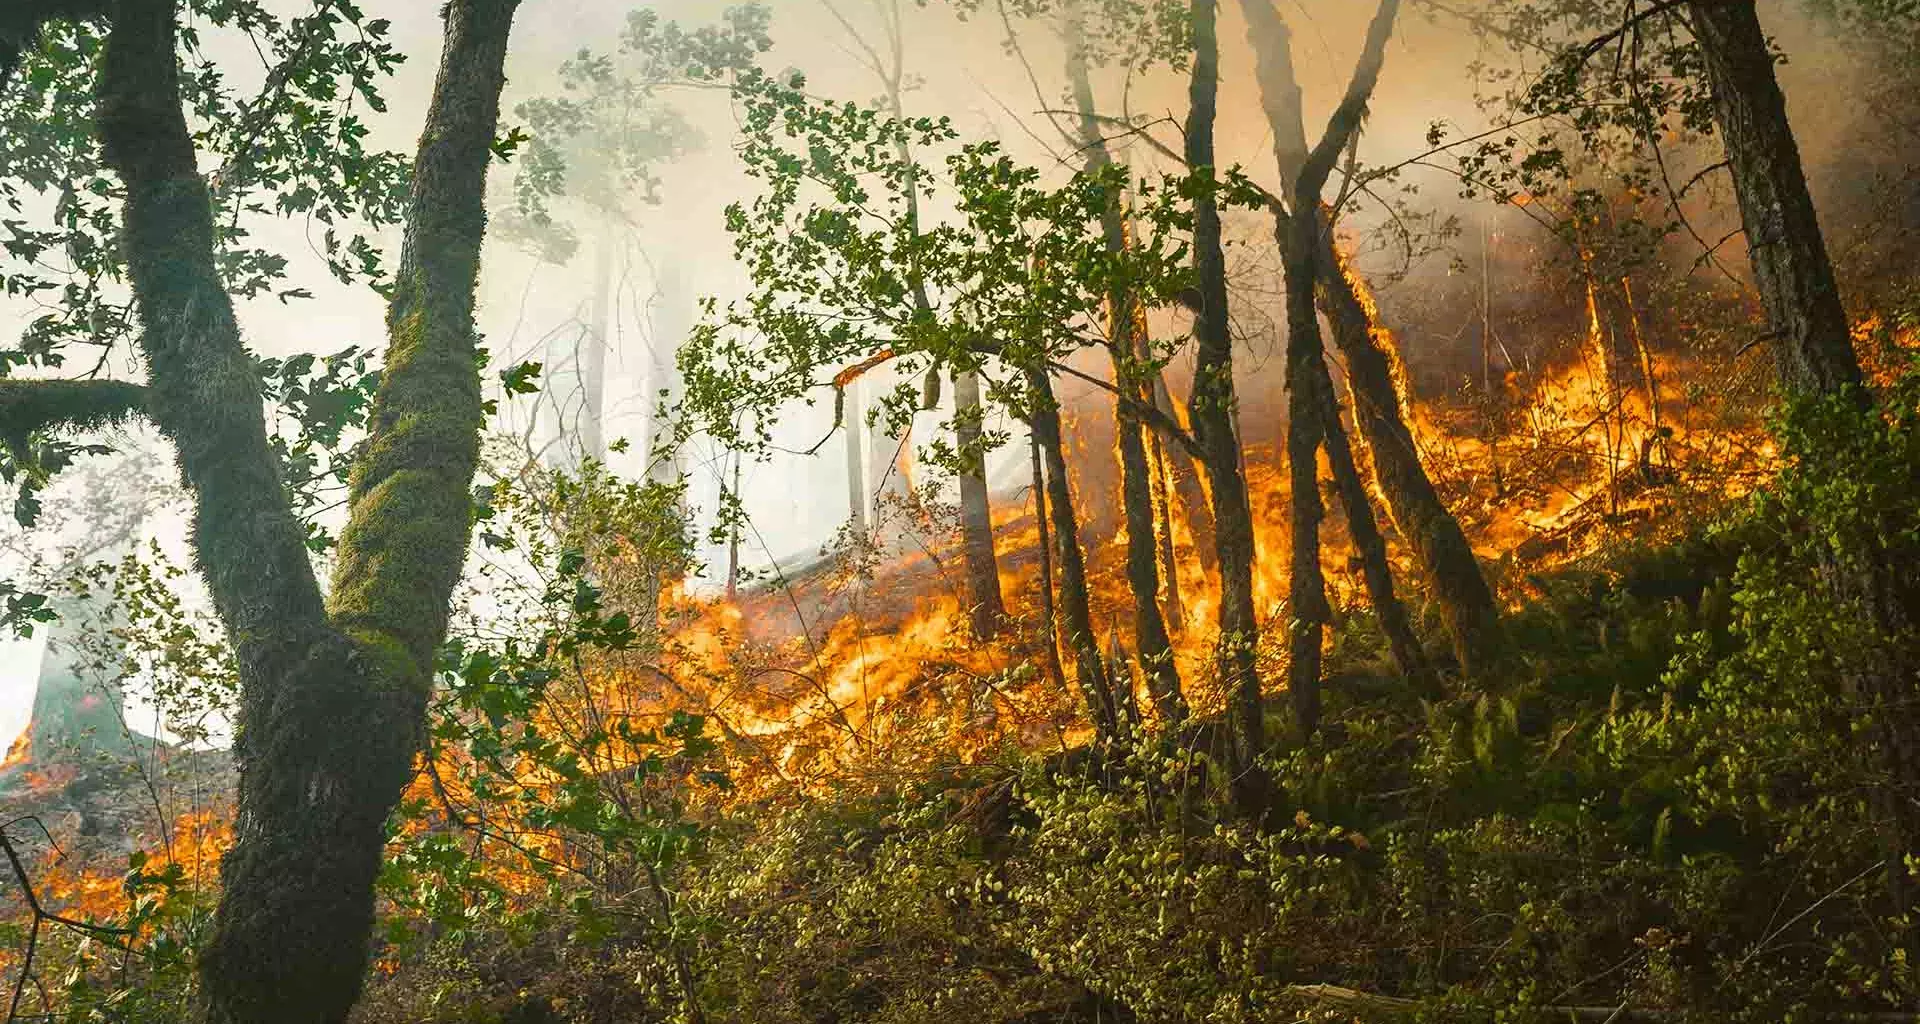 Los incendios forestales son más recurrentes por la crisis climática